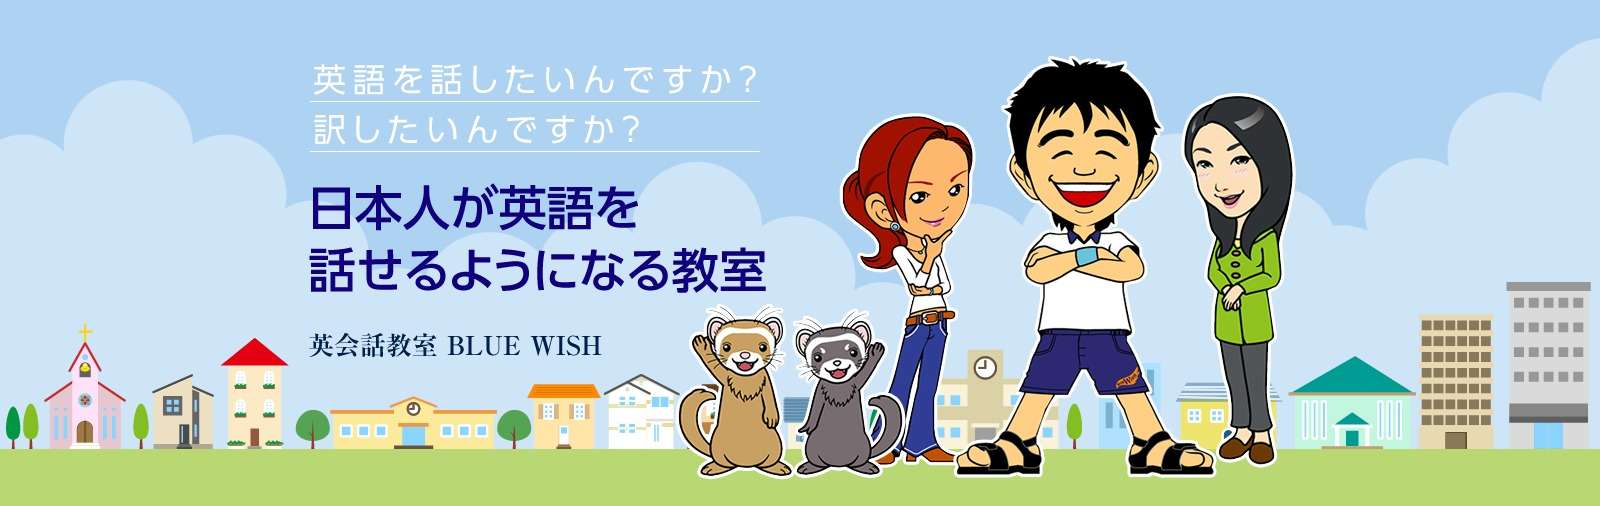 日本人講師が教える英会話スクール